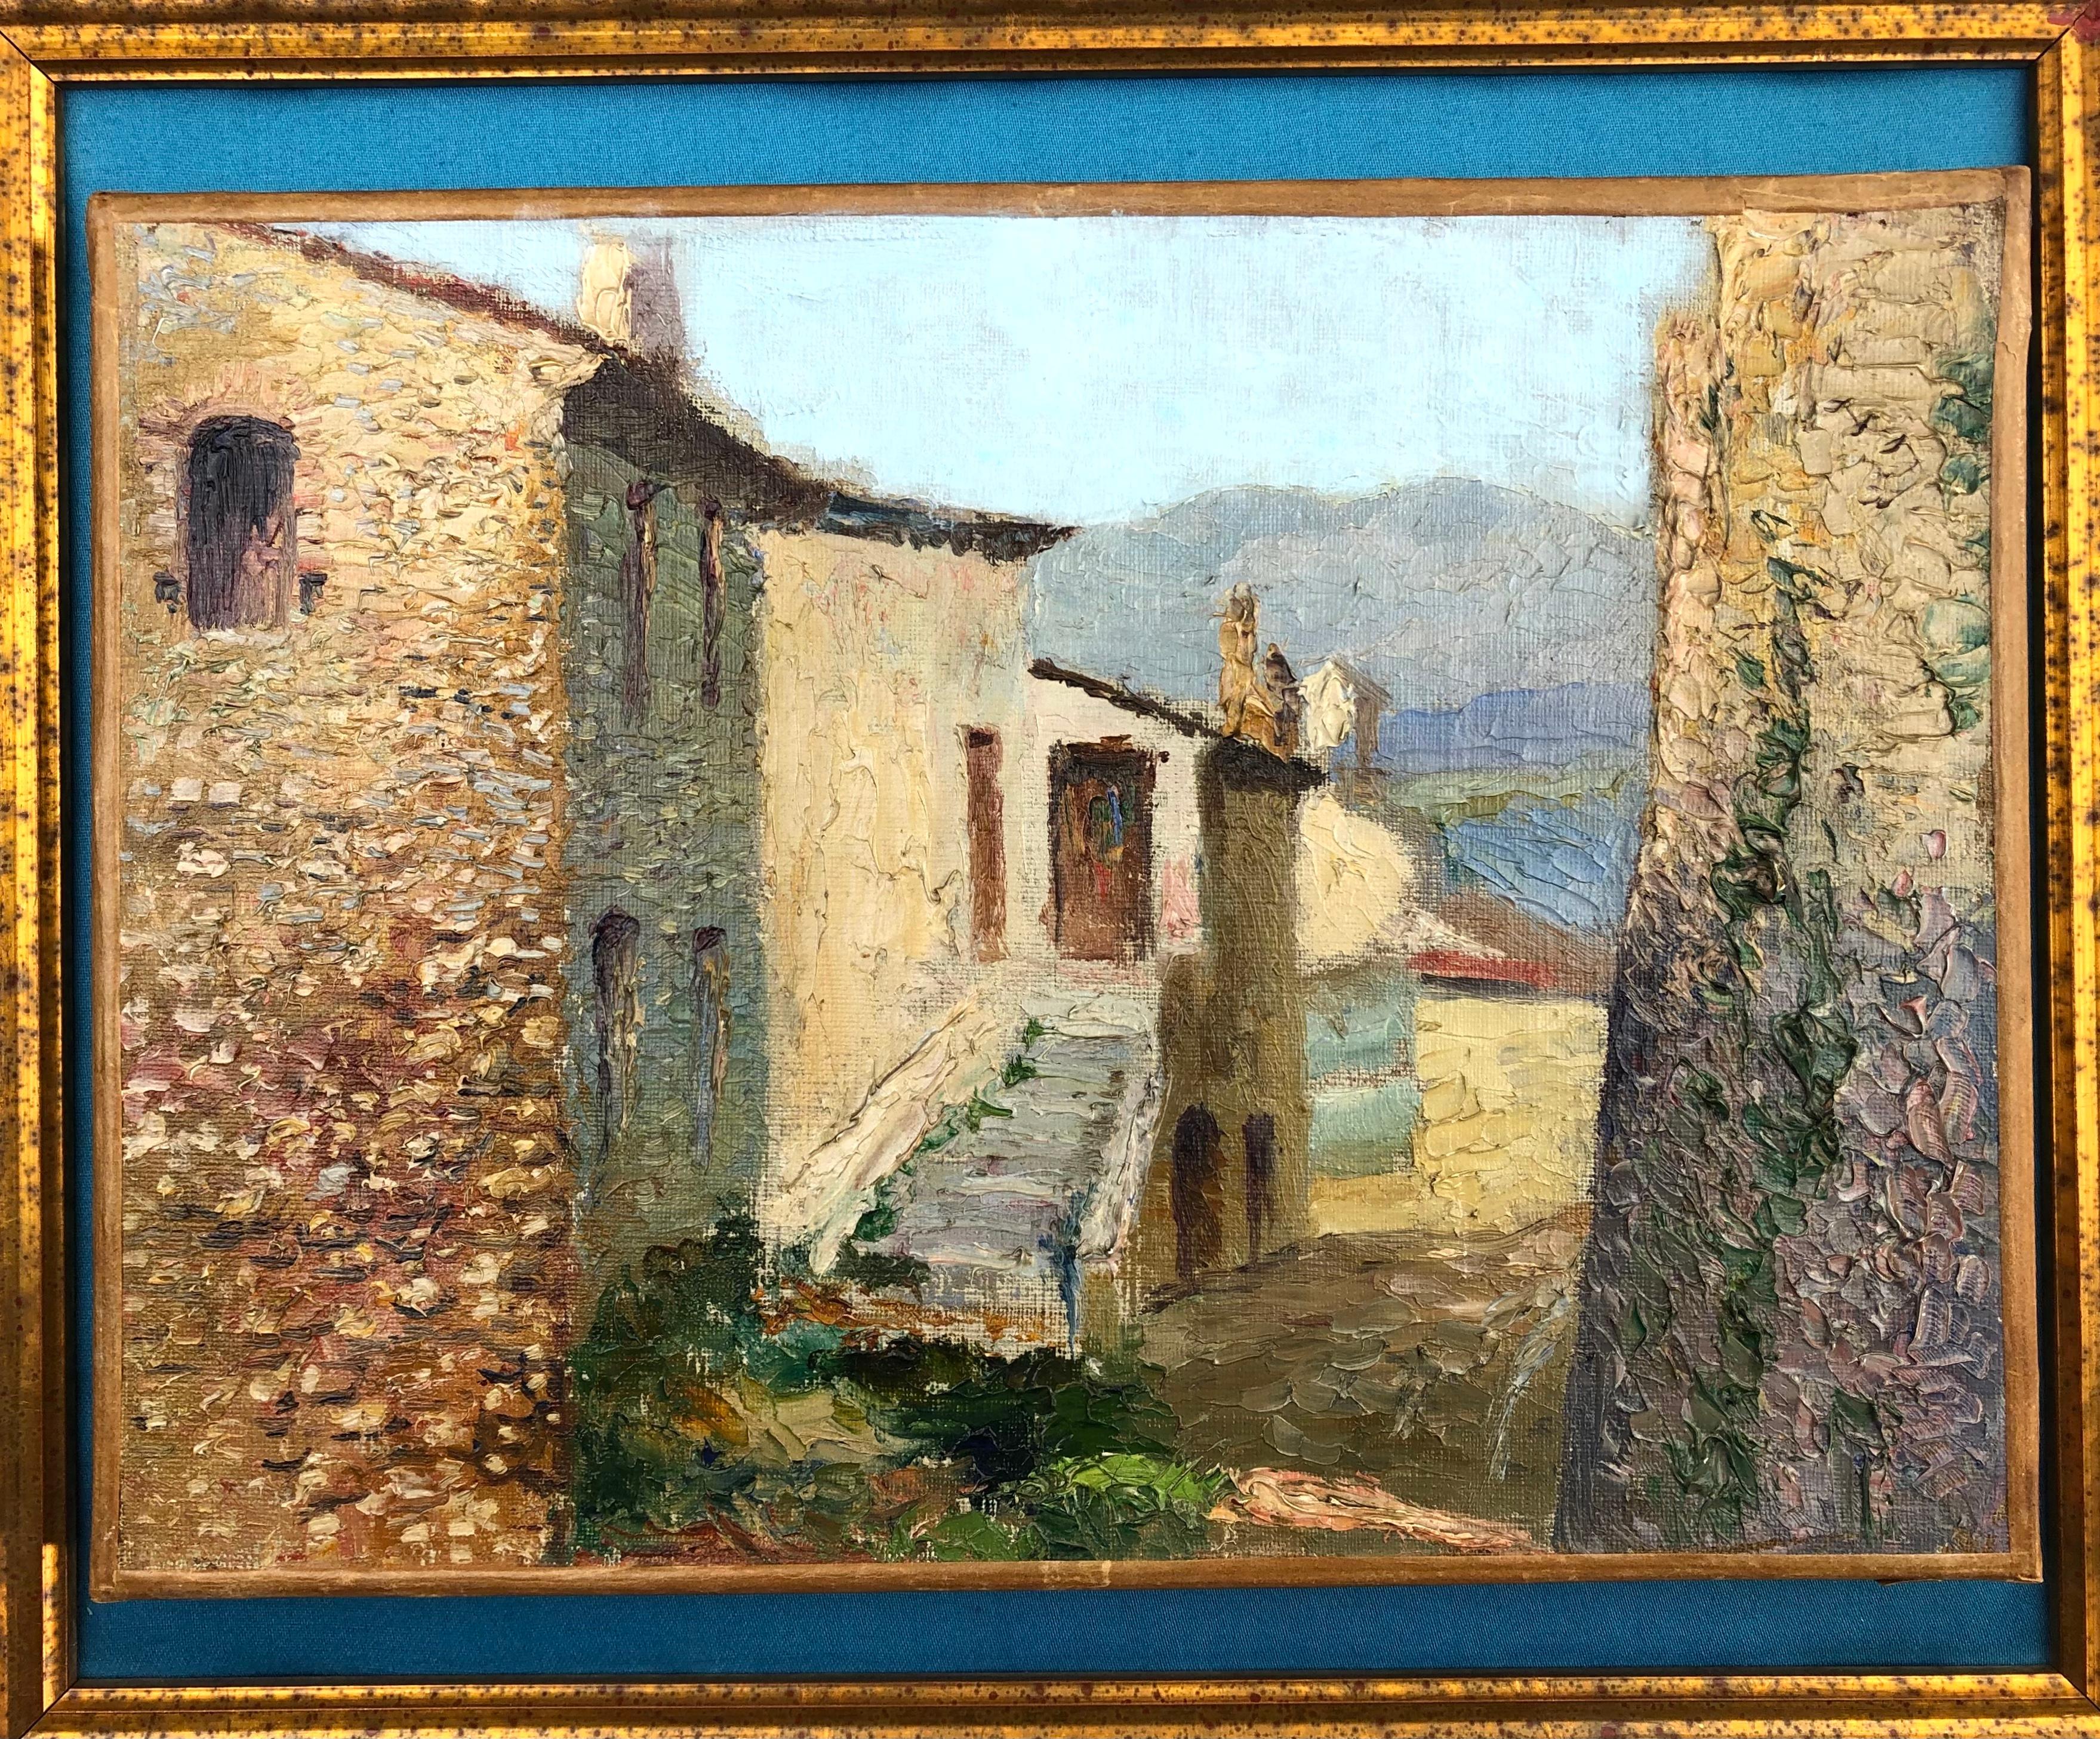 Artiste/École : Français, 20e siècle, signé
Sujet Côte d'Azur village de Cagnes.

Encadré professionnellement.

